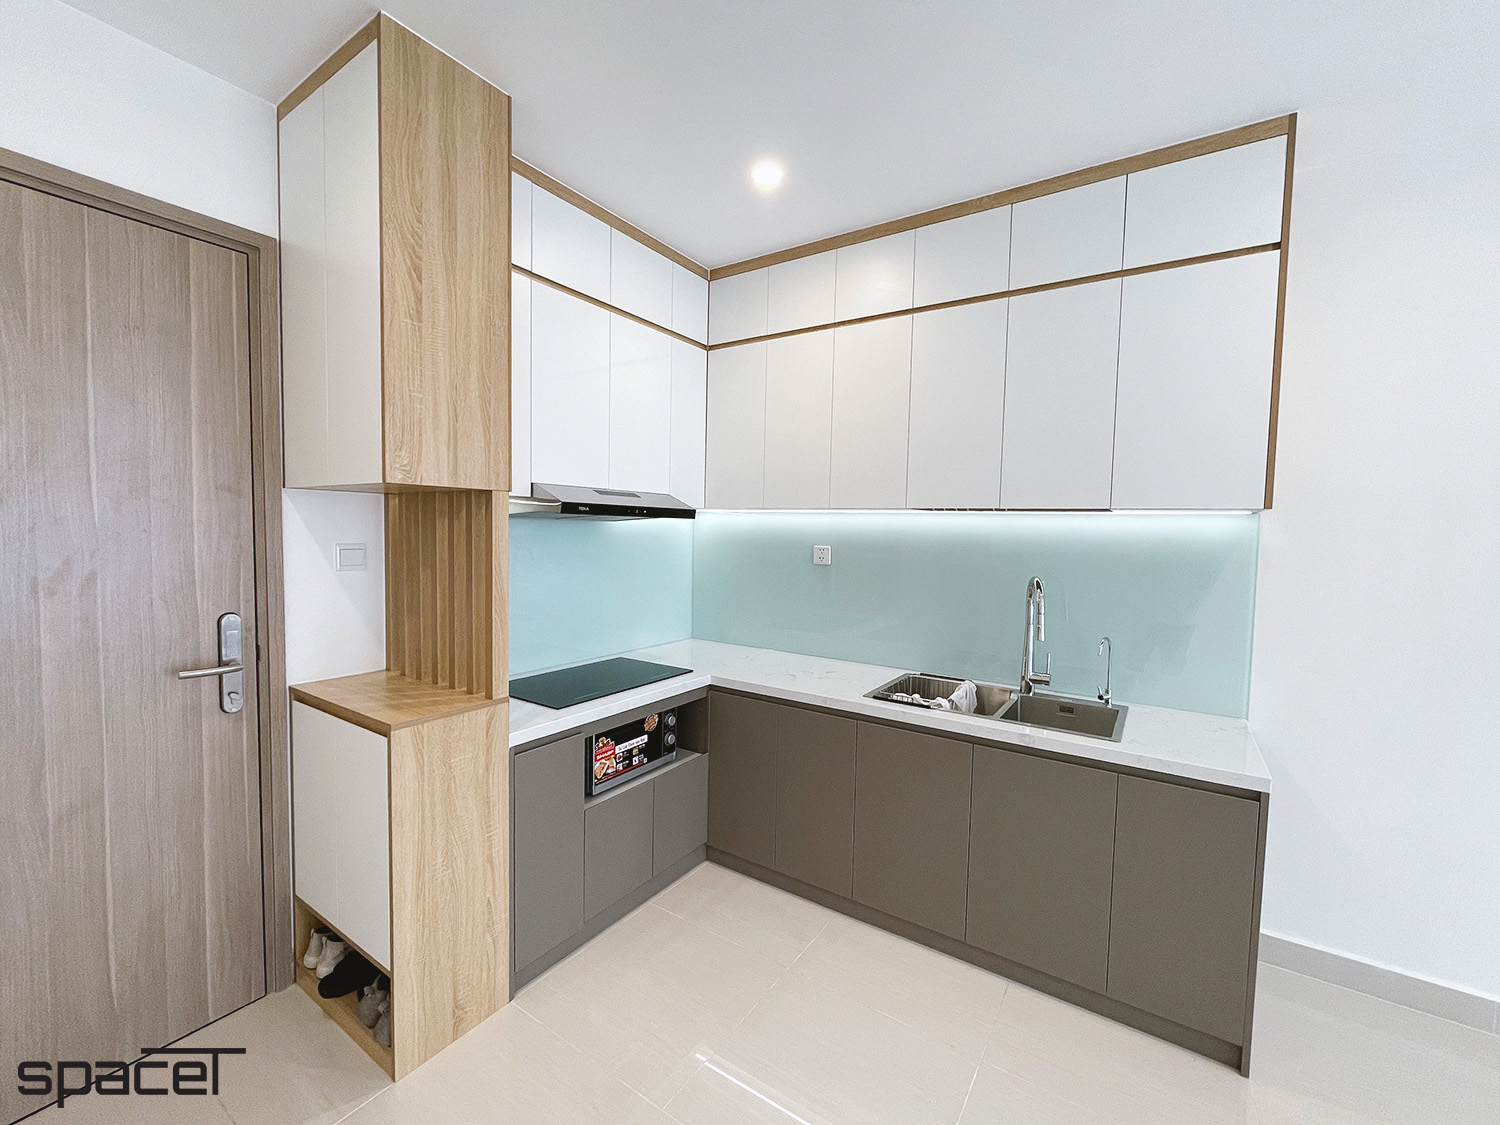 Lối vào, phòng bếp, phong cách hiện đại Modern, hoàn thiện nội thất, căn hộ The Origami Vinhomes